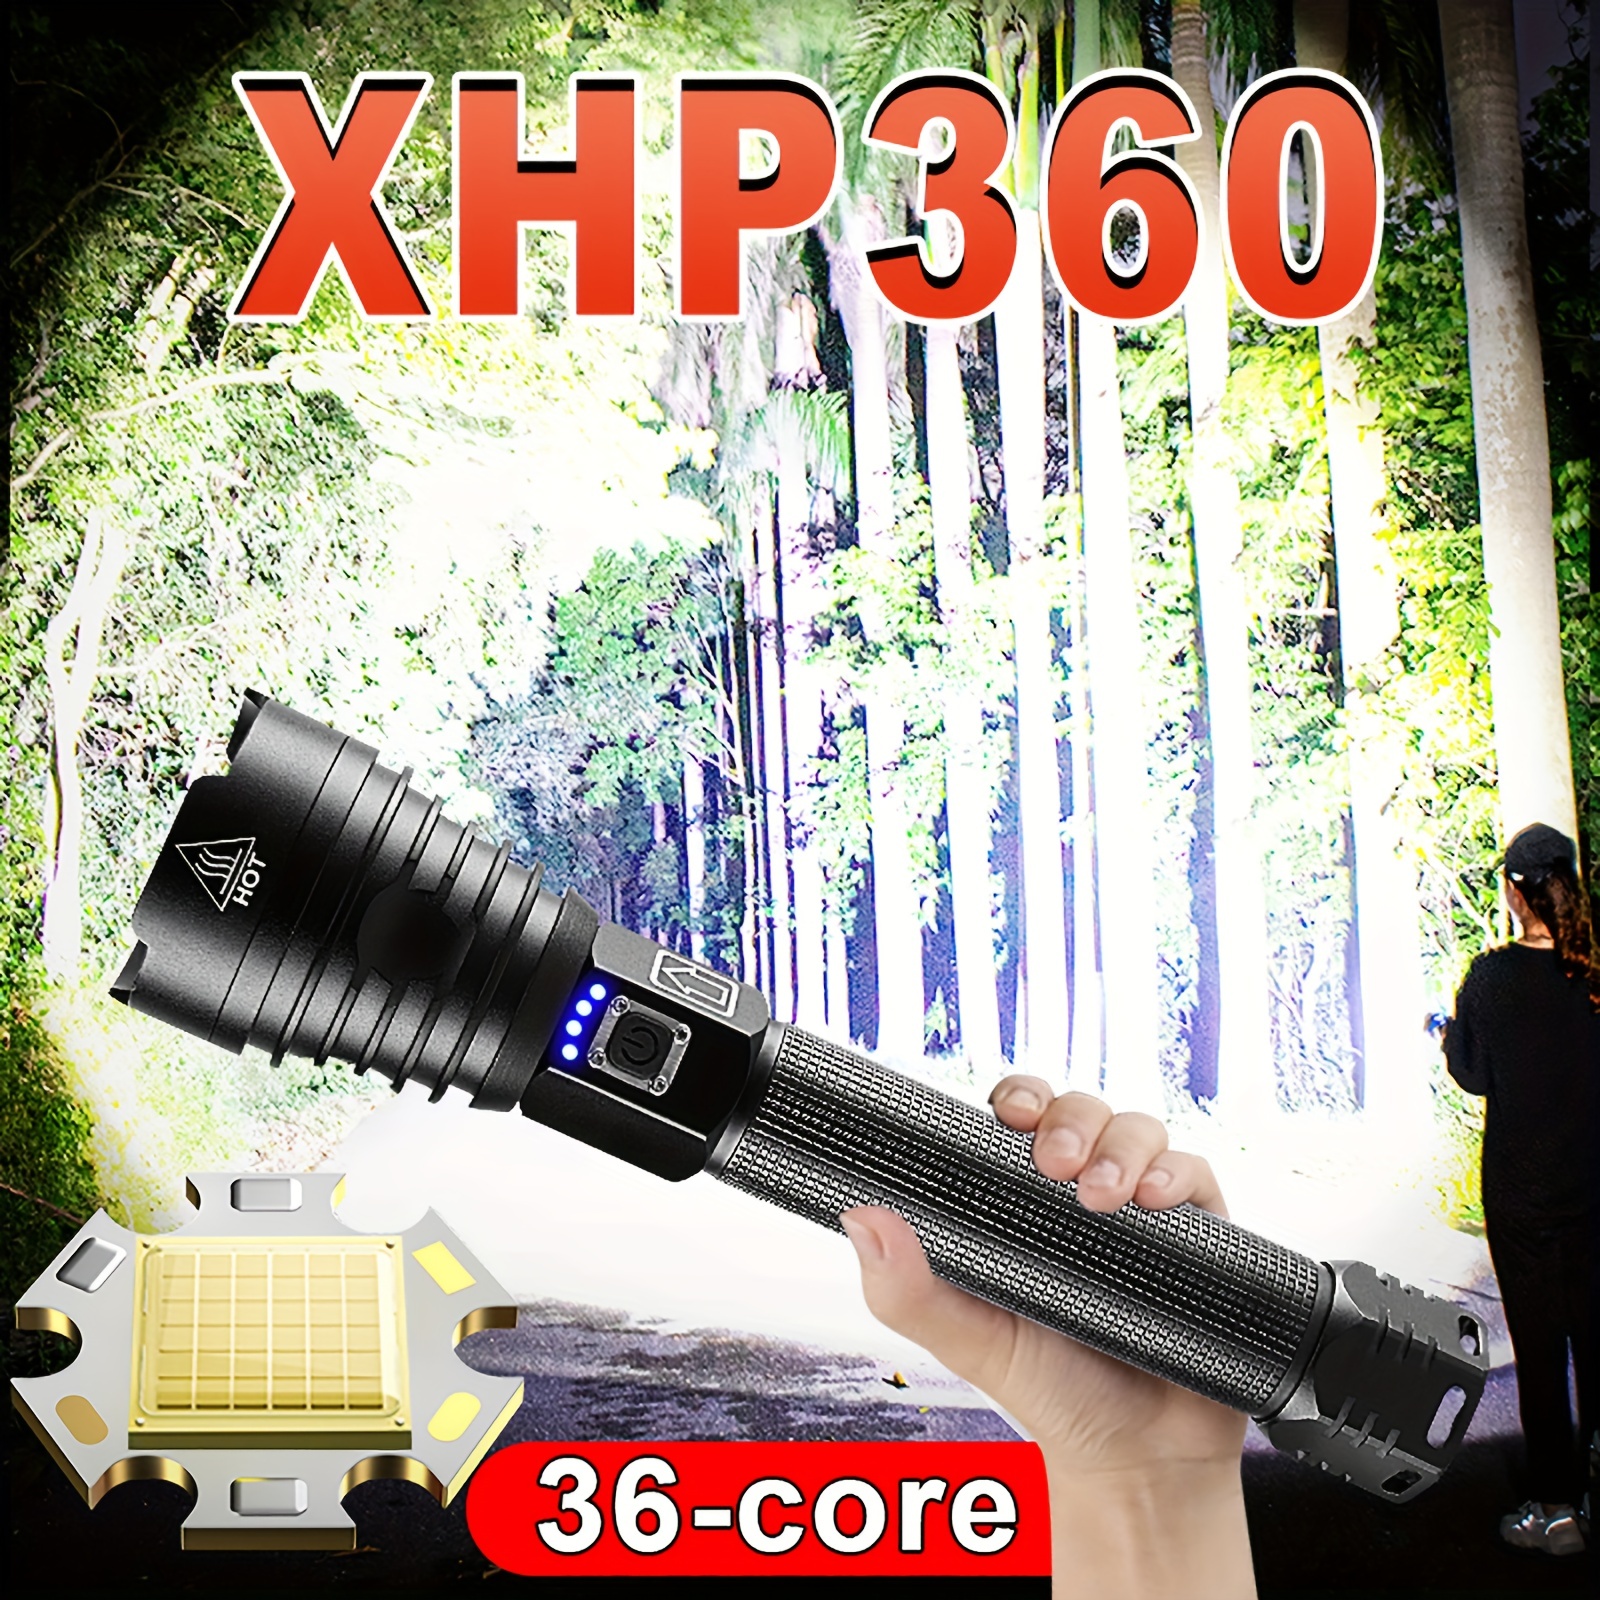 Linterna potente XHP360 de 9000LM, linterna táctica de alta potencia,  linterna recargable, lámpara de mano, linterna Led para Camping